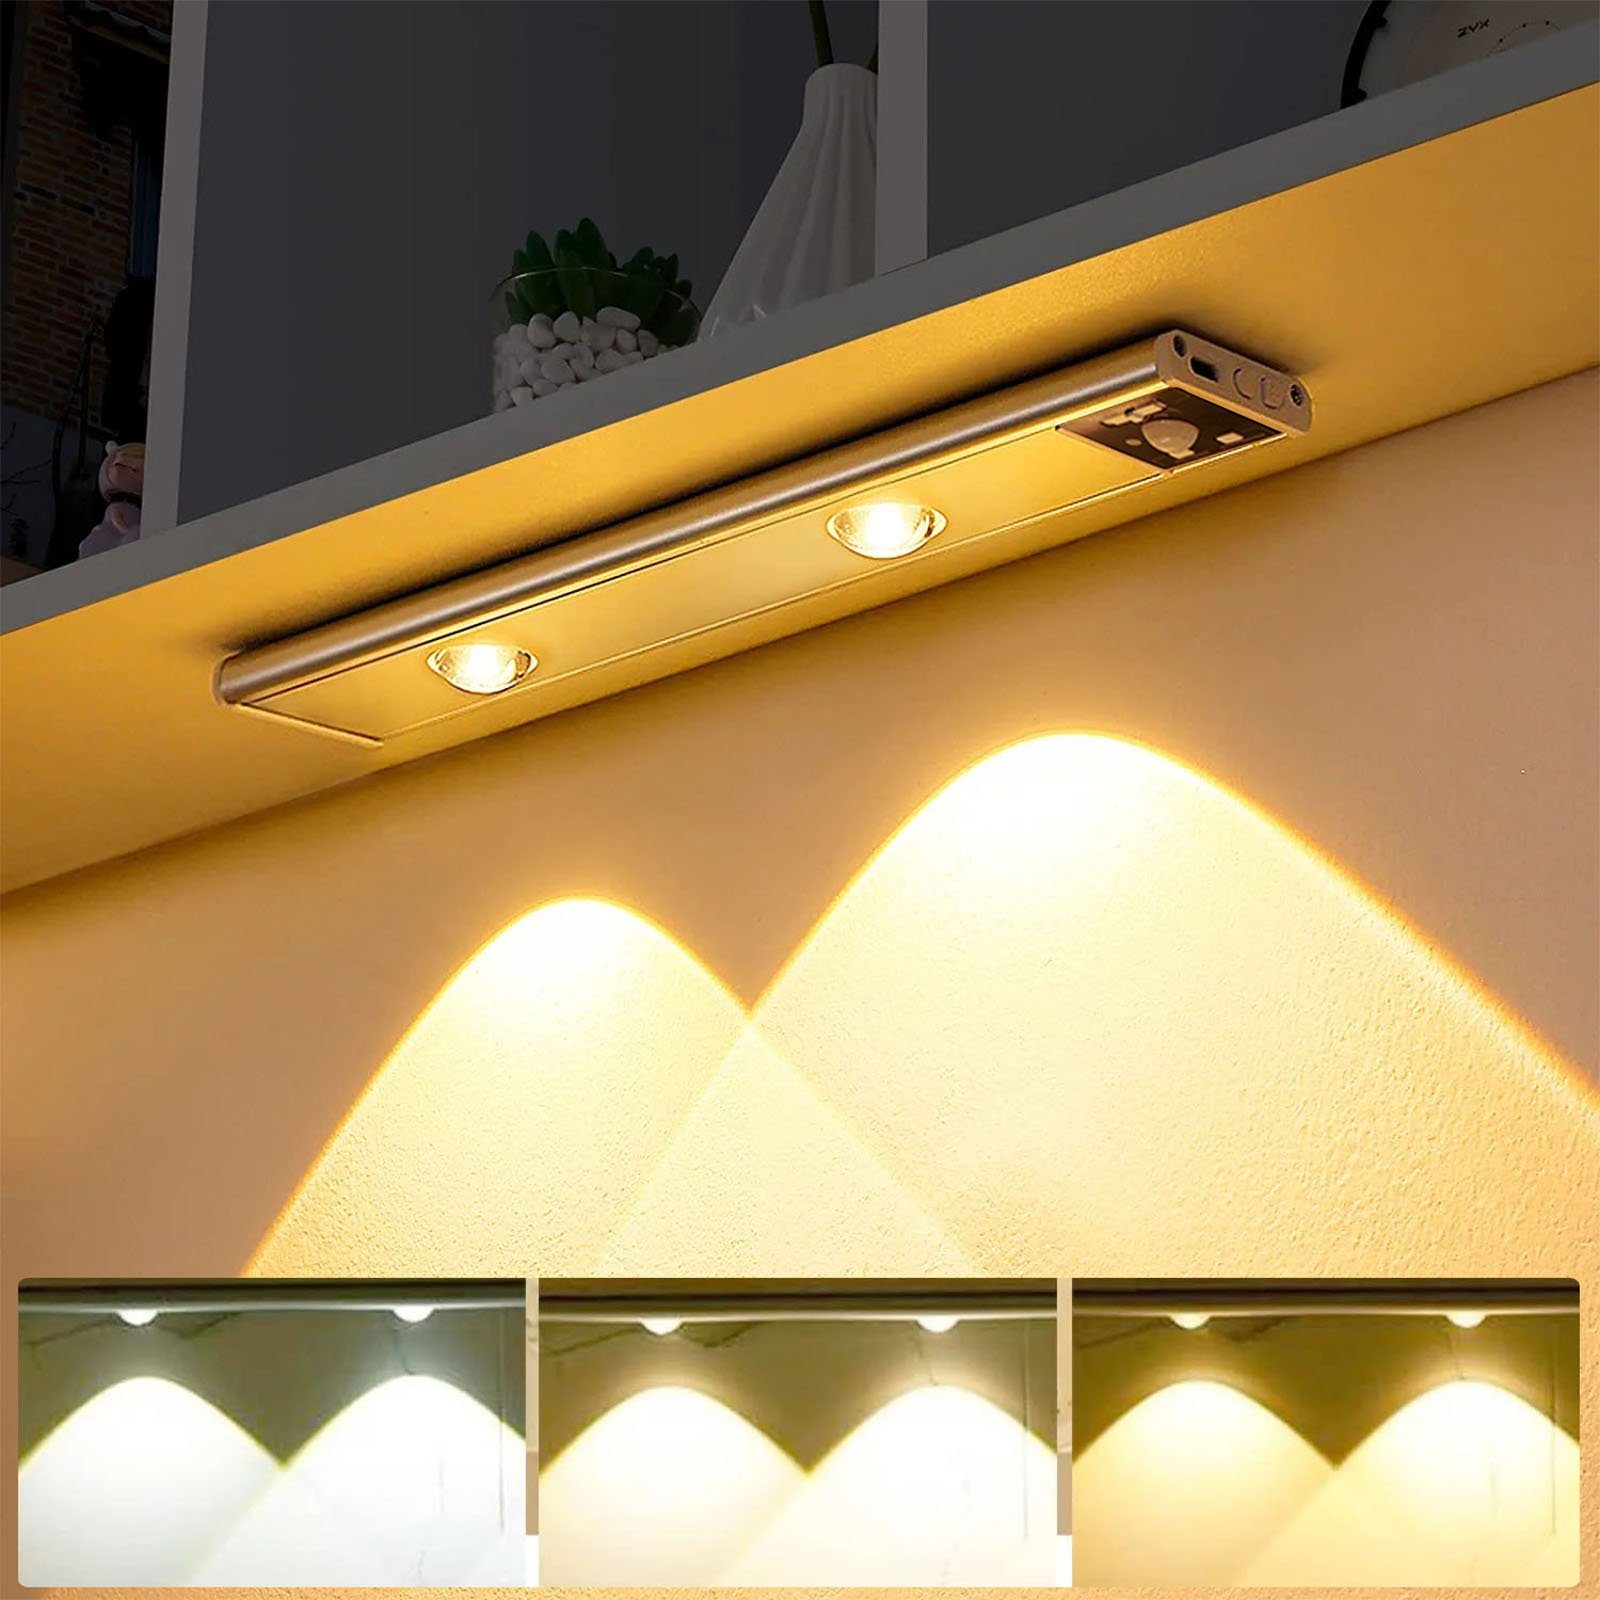 MUPOO LED Unterbauleuchte Schrankbeleuchtung mit Licht, LED Sensor 3 Küche, Bewegungsmelder, USB Aufladbar Unterbauleuchte Dimmbar, Farben